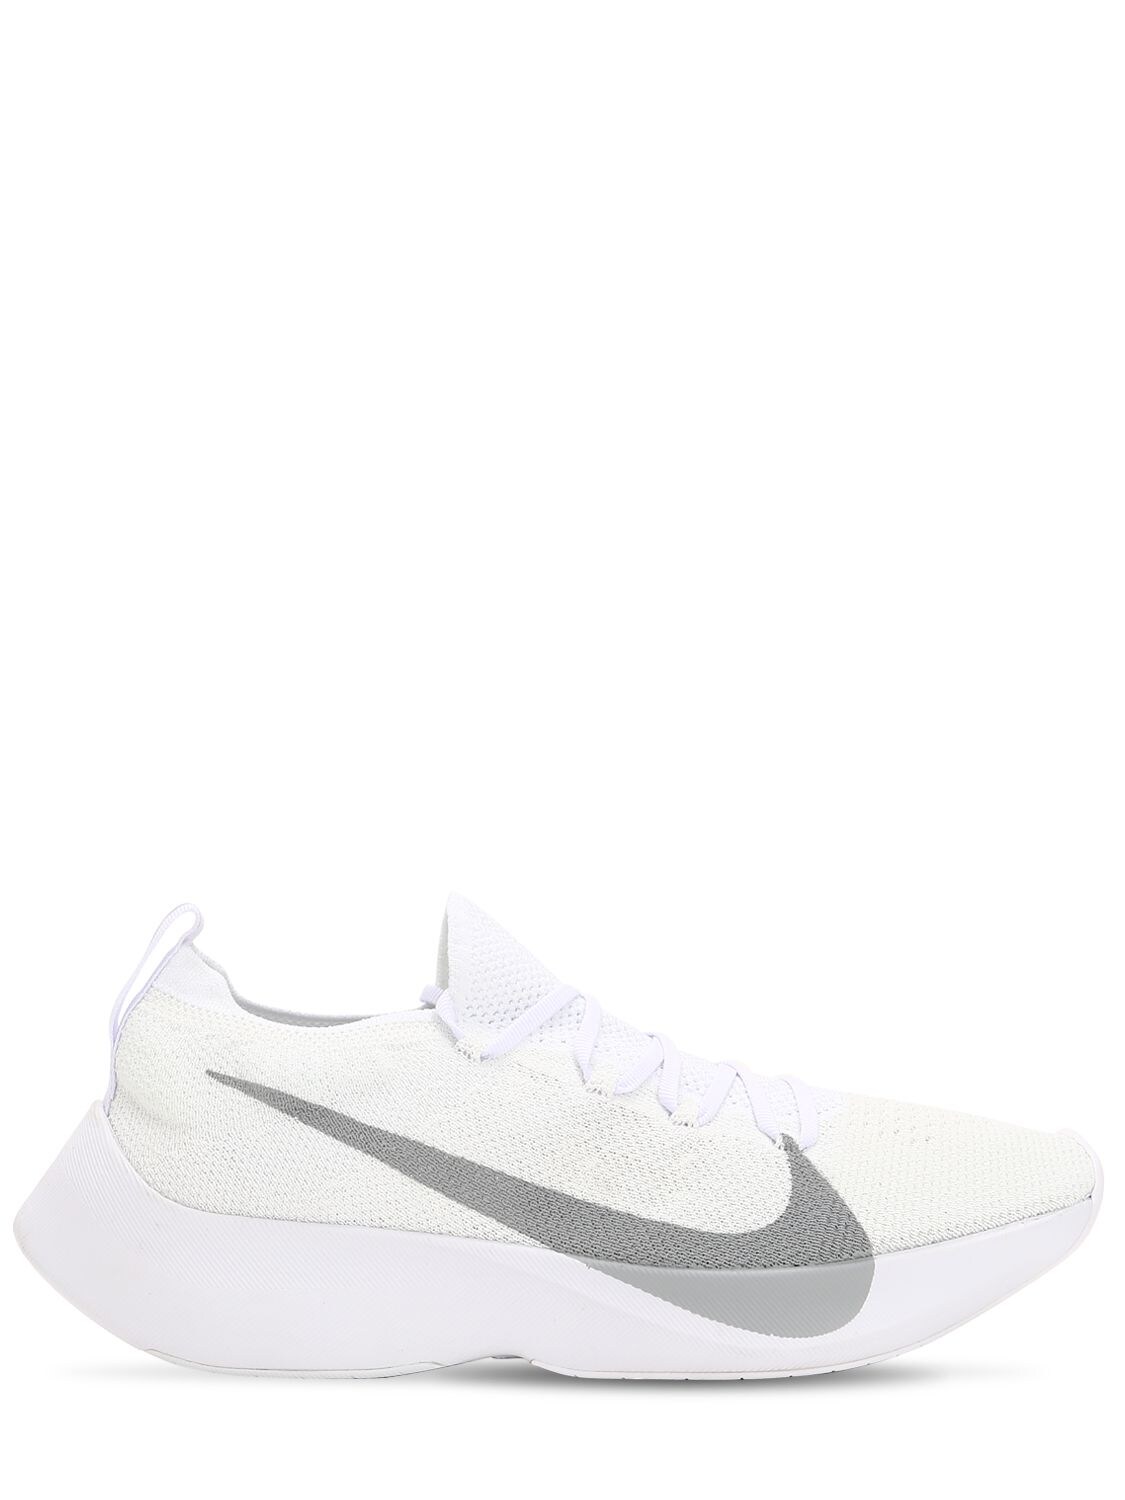 Nike Vapor Street Flyknit Sneakers In White